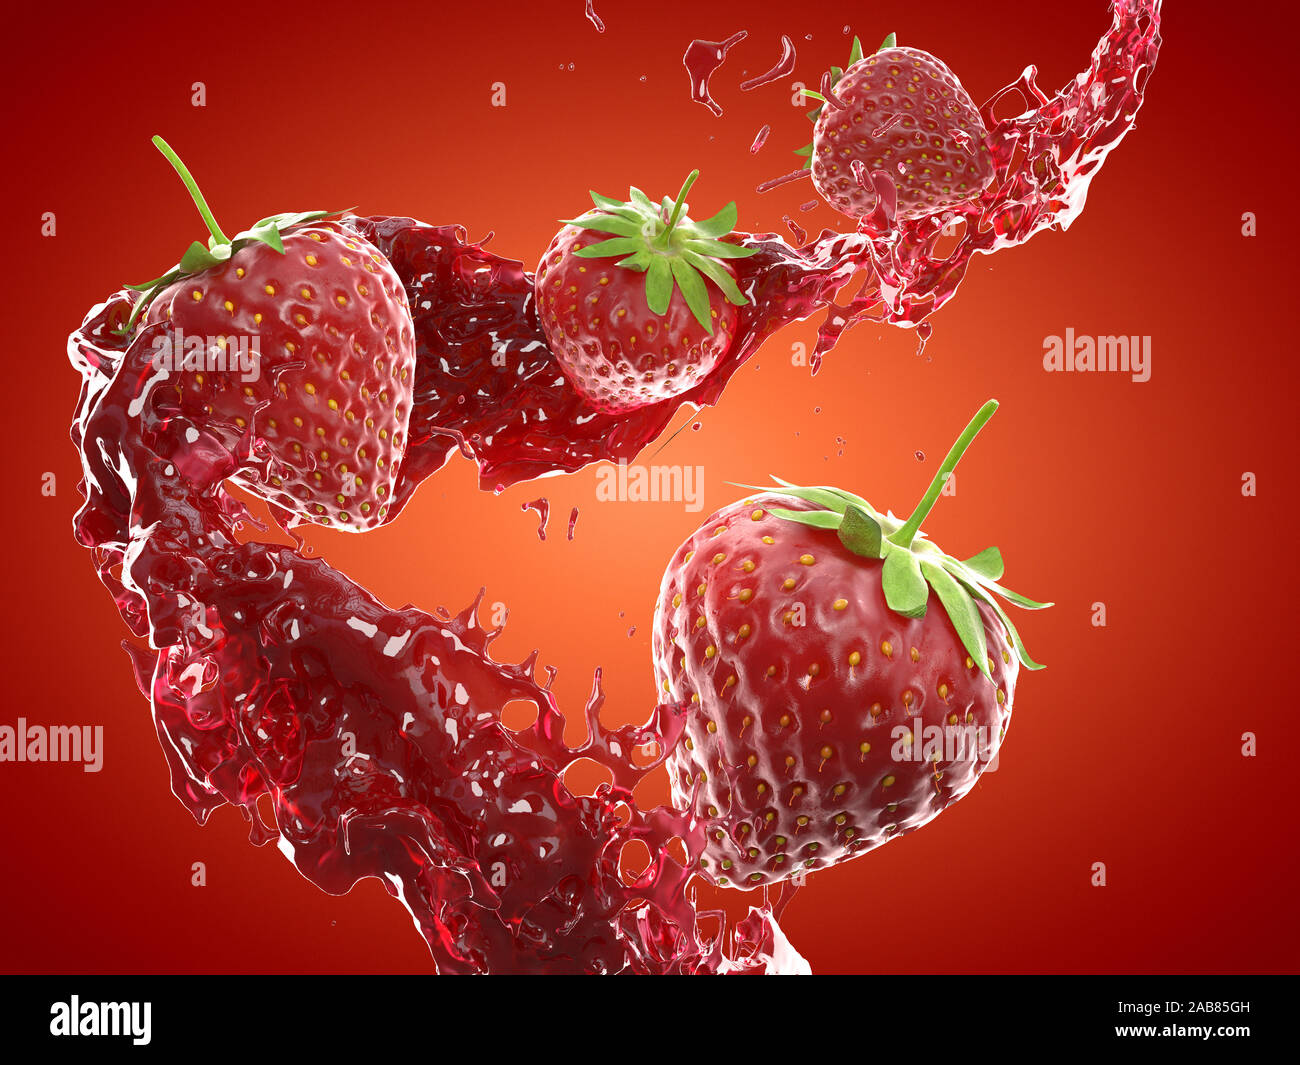 La nourriture en rendu 3d illustration d'un splash stawberry Banque D'Images